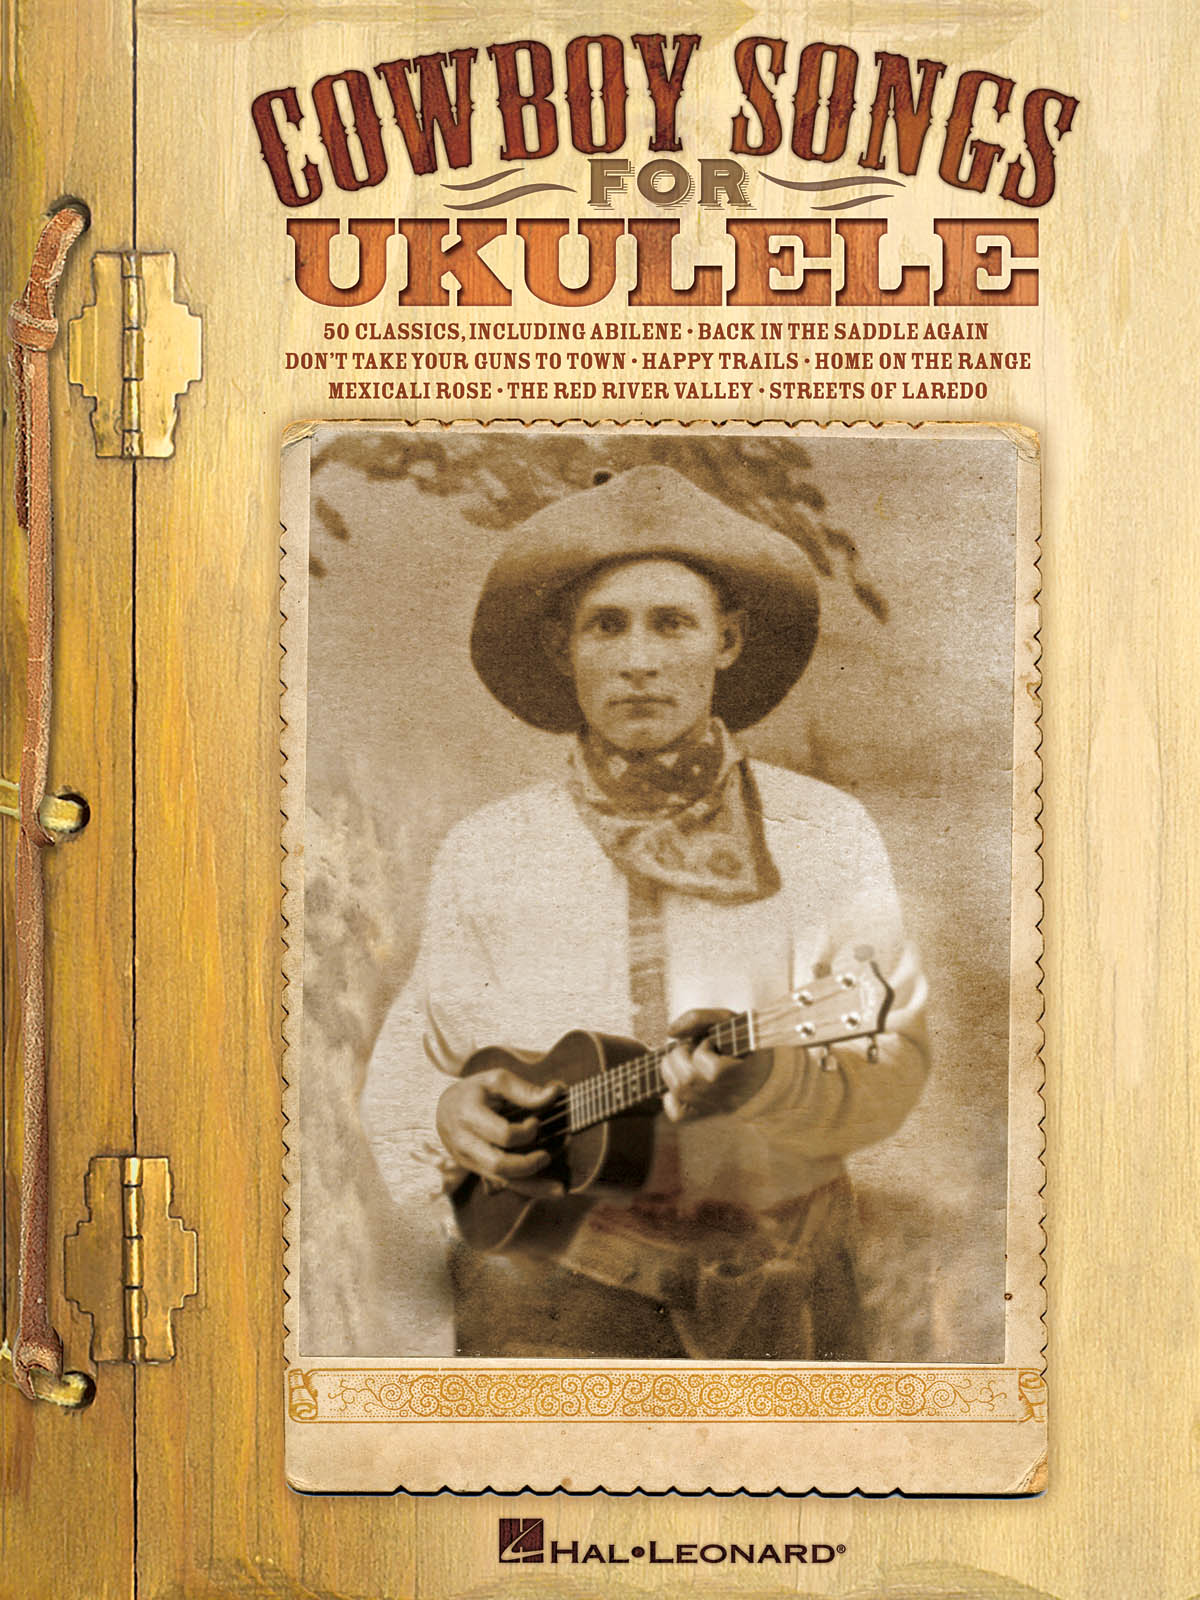 Cowboy Songs for Ukulele: Ukulele: Mixed Songbook